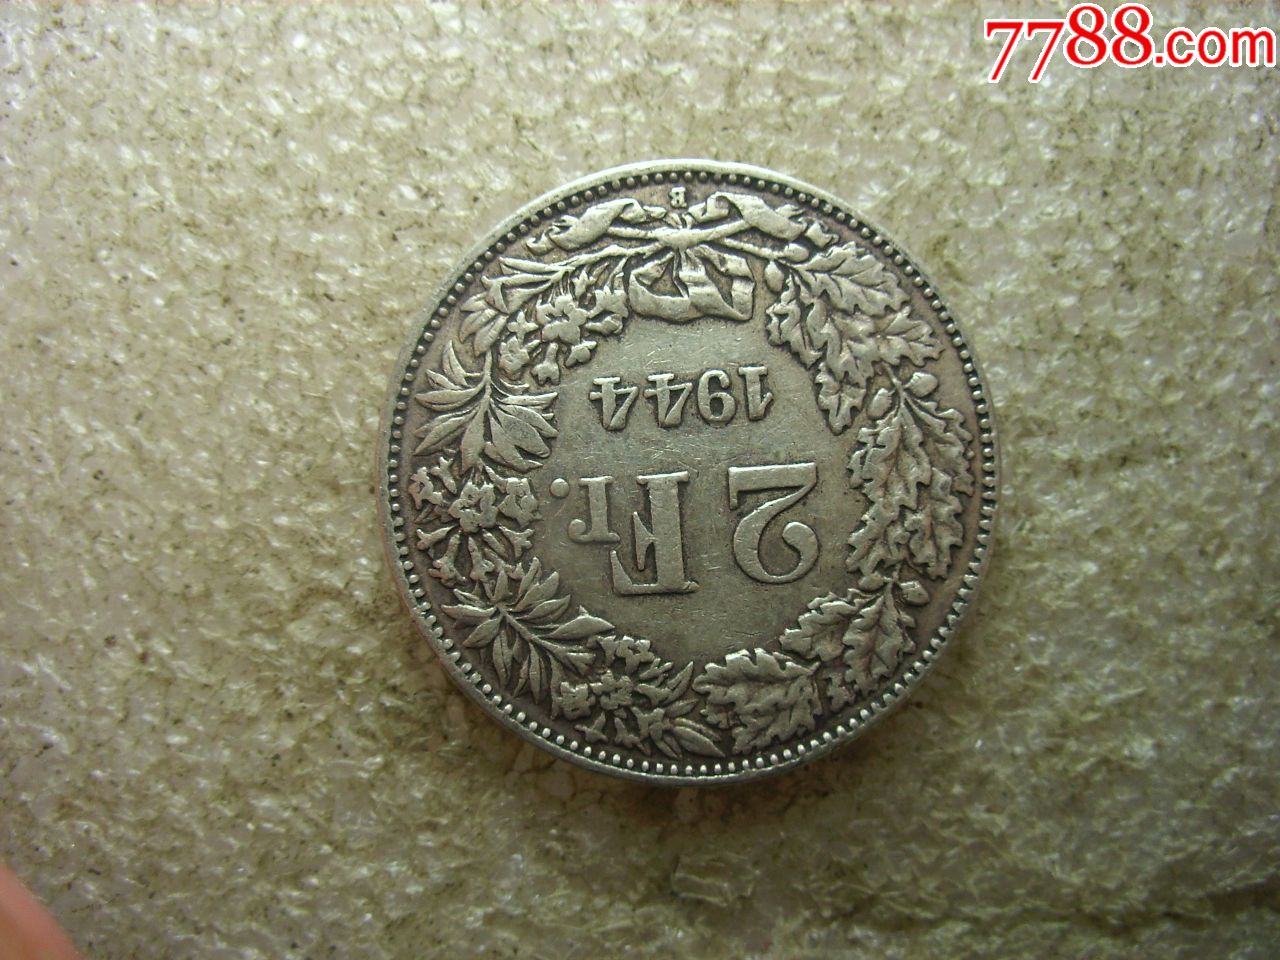 原味美品1944瑞士2法郎银币